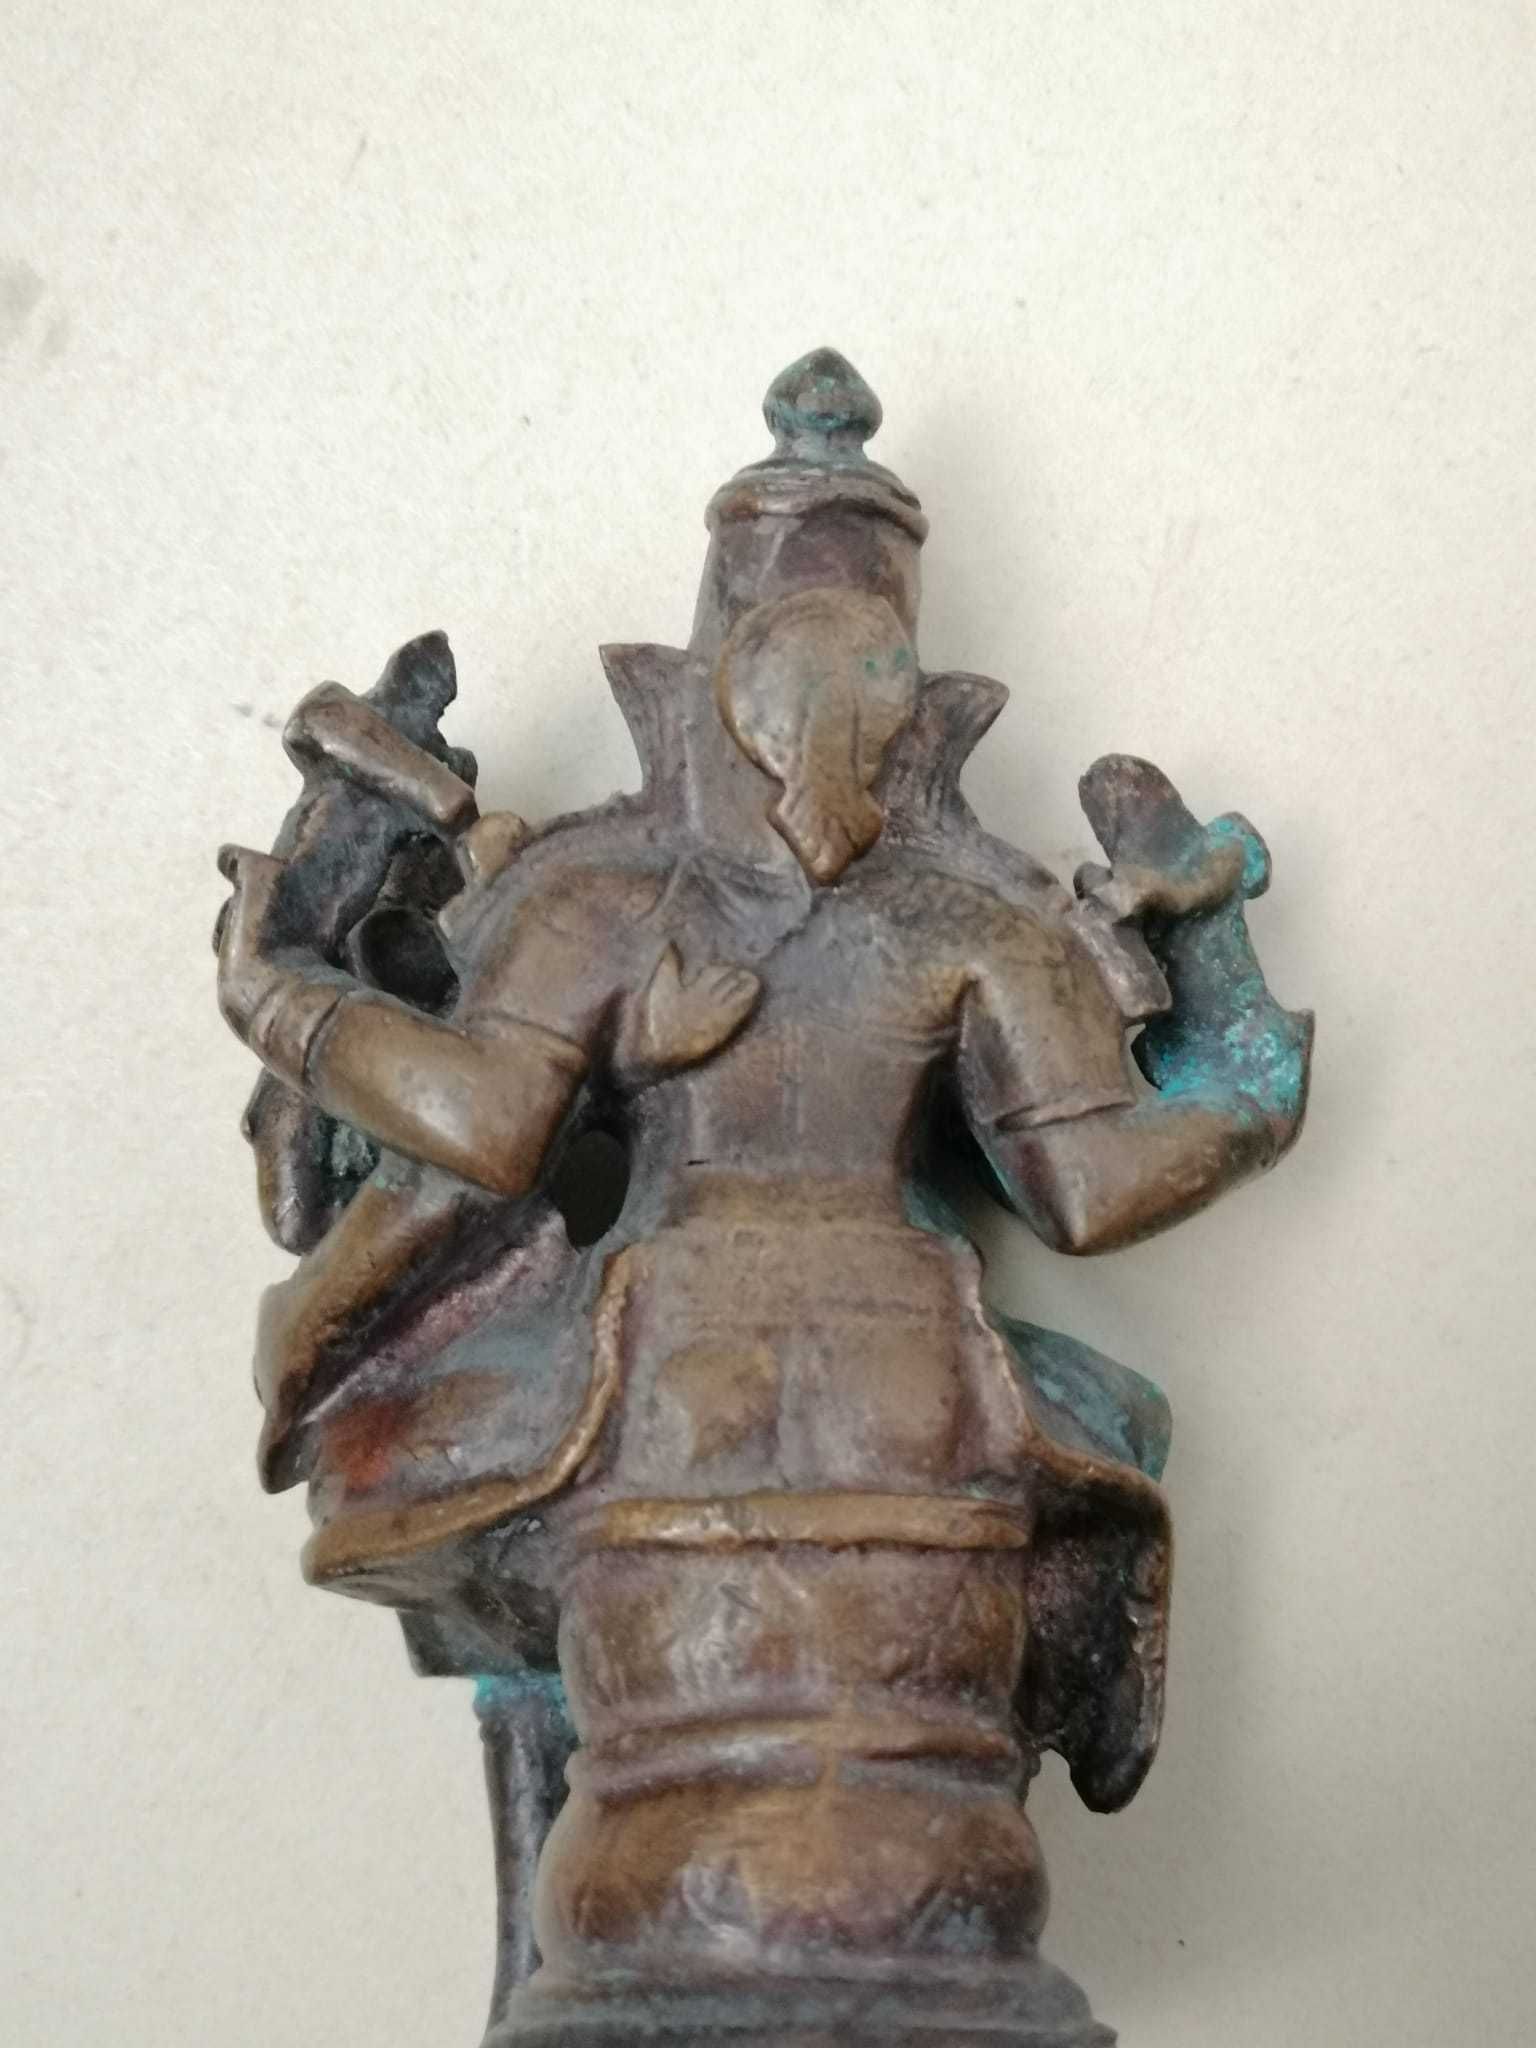 Statuie vintage hindusa Narasimha